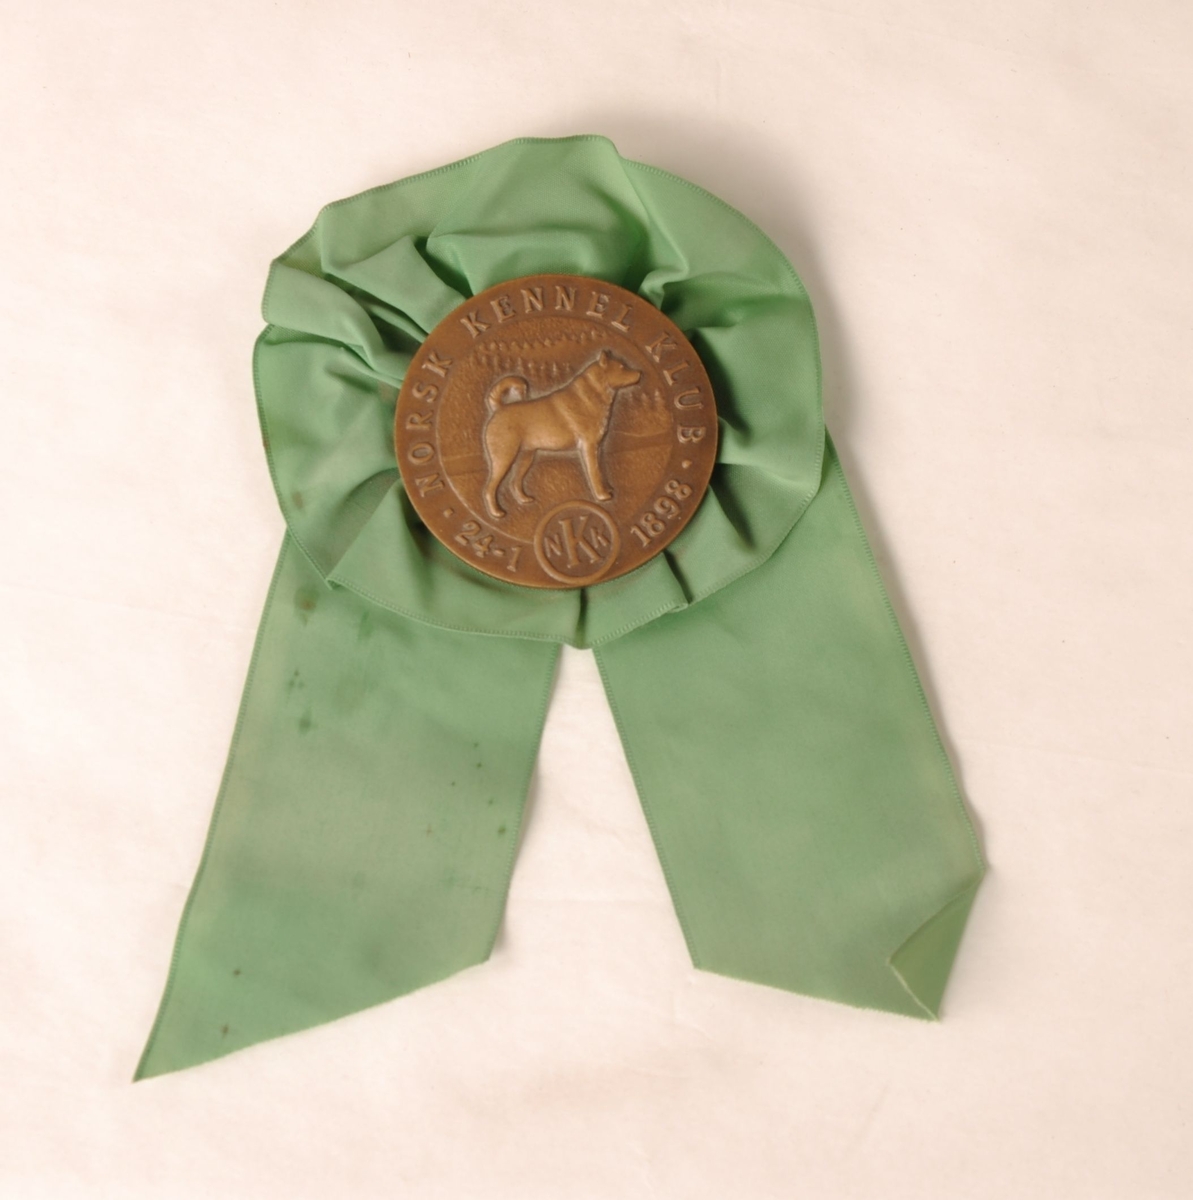 Rosett av grønt tekstil med medalje av brunt metall i midten.